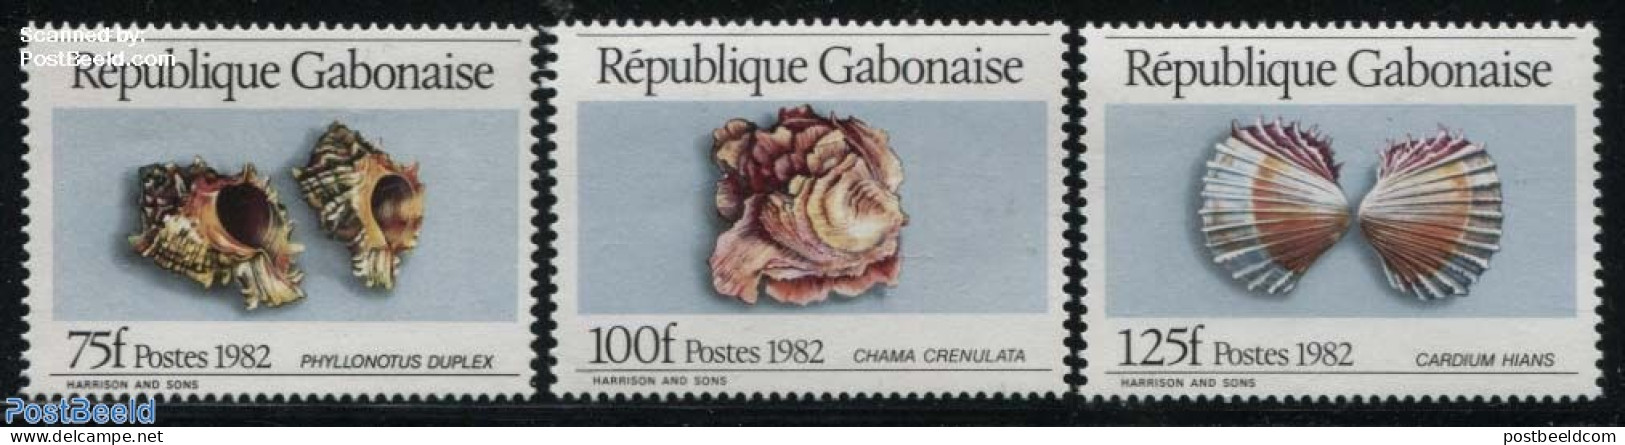 Gabon 1982 Moluscs 3v, Mint NH, Nature - Shells & Crustaceans - Nuevos